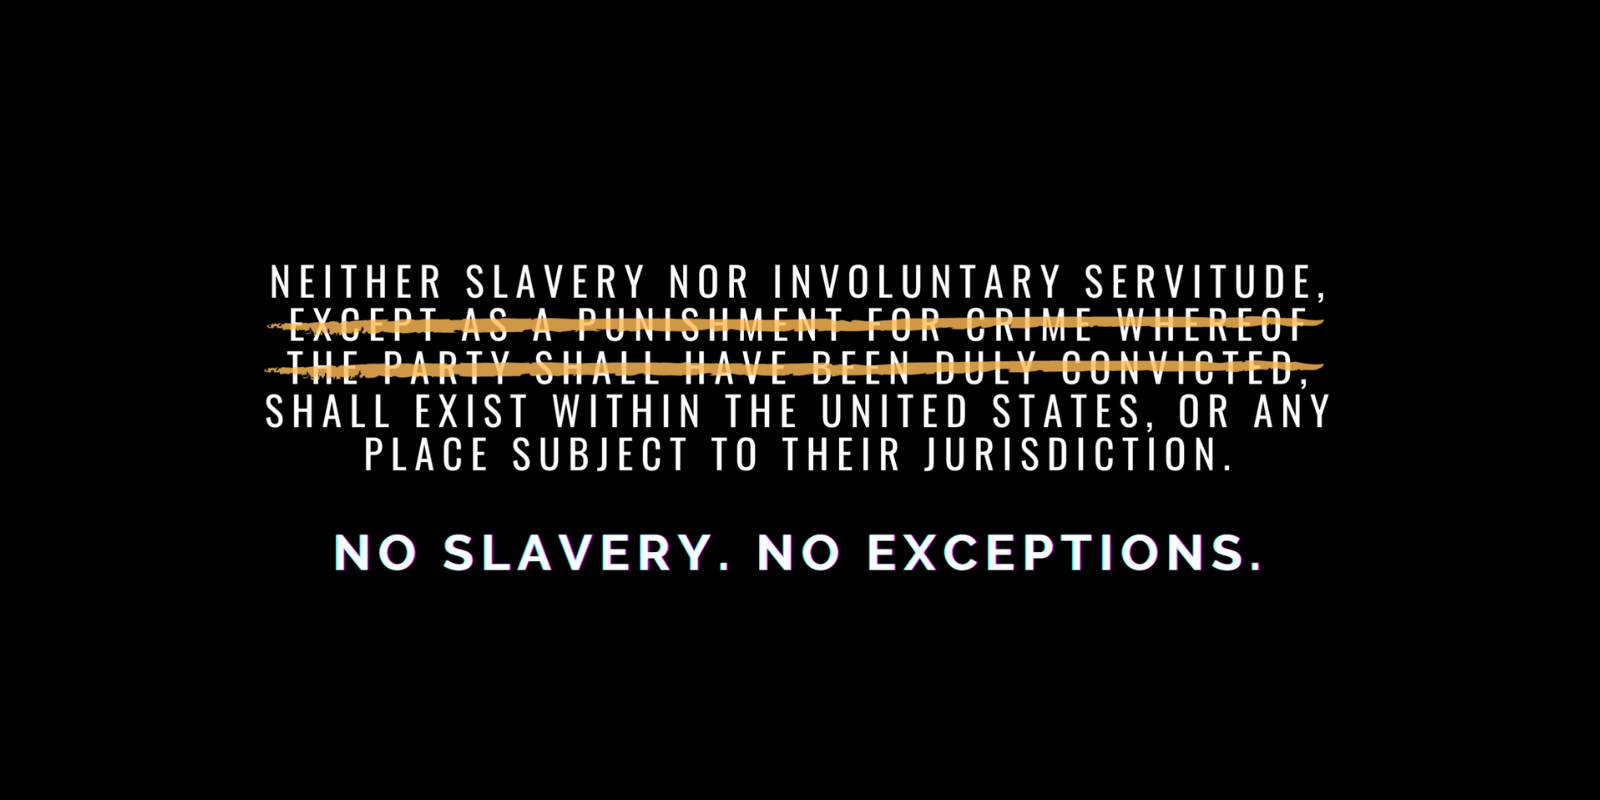 No slavery no exceptions